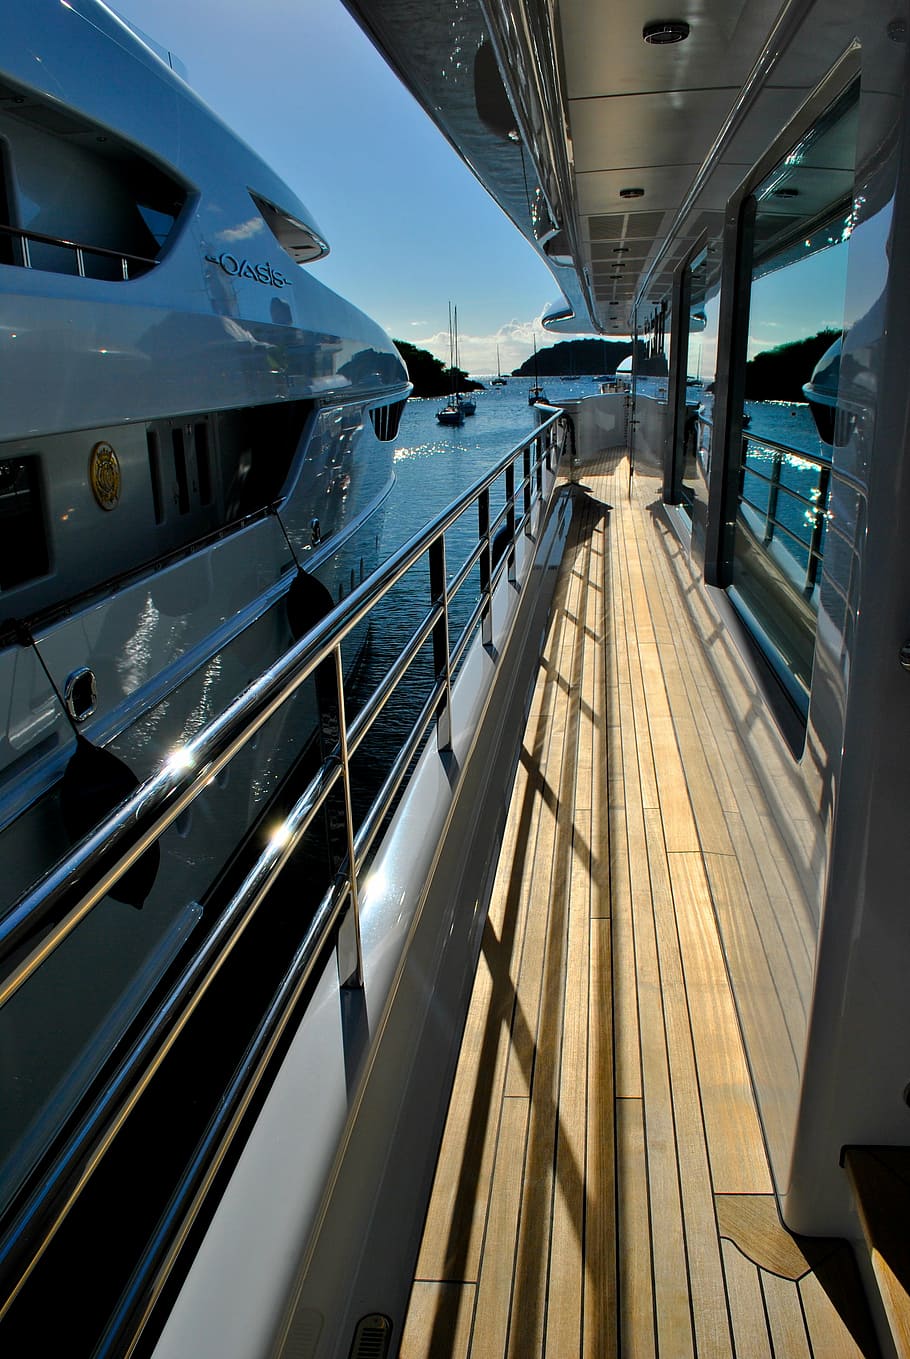 yacht deck, boats, motor yachts, megayachts, superyacht, megayacht, yacht, modern, architecture, transportation